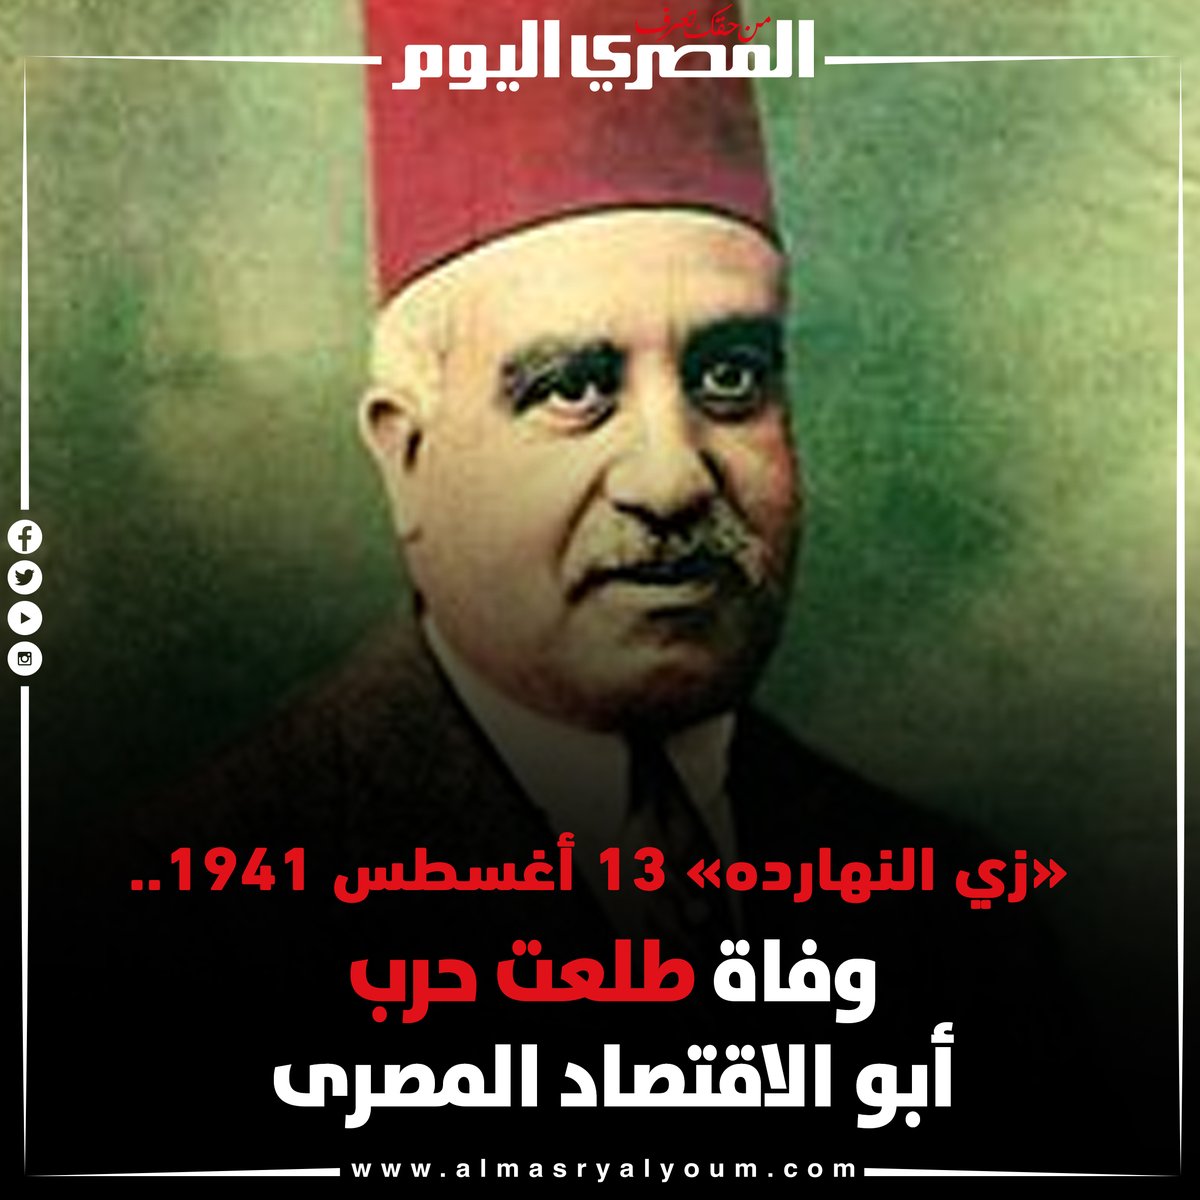 «زي النهارده» وفاة أبو الاقتصاد المصرى طلعت حرب 13 أغسطس 1941